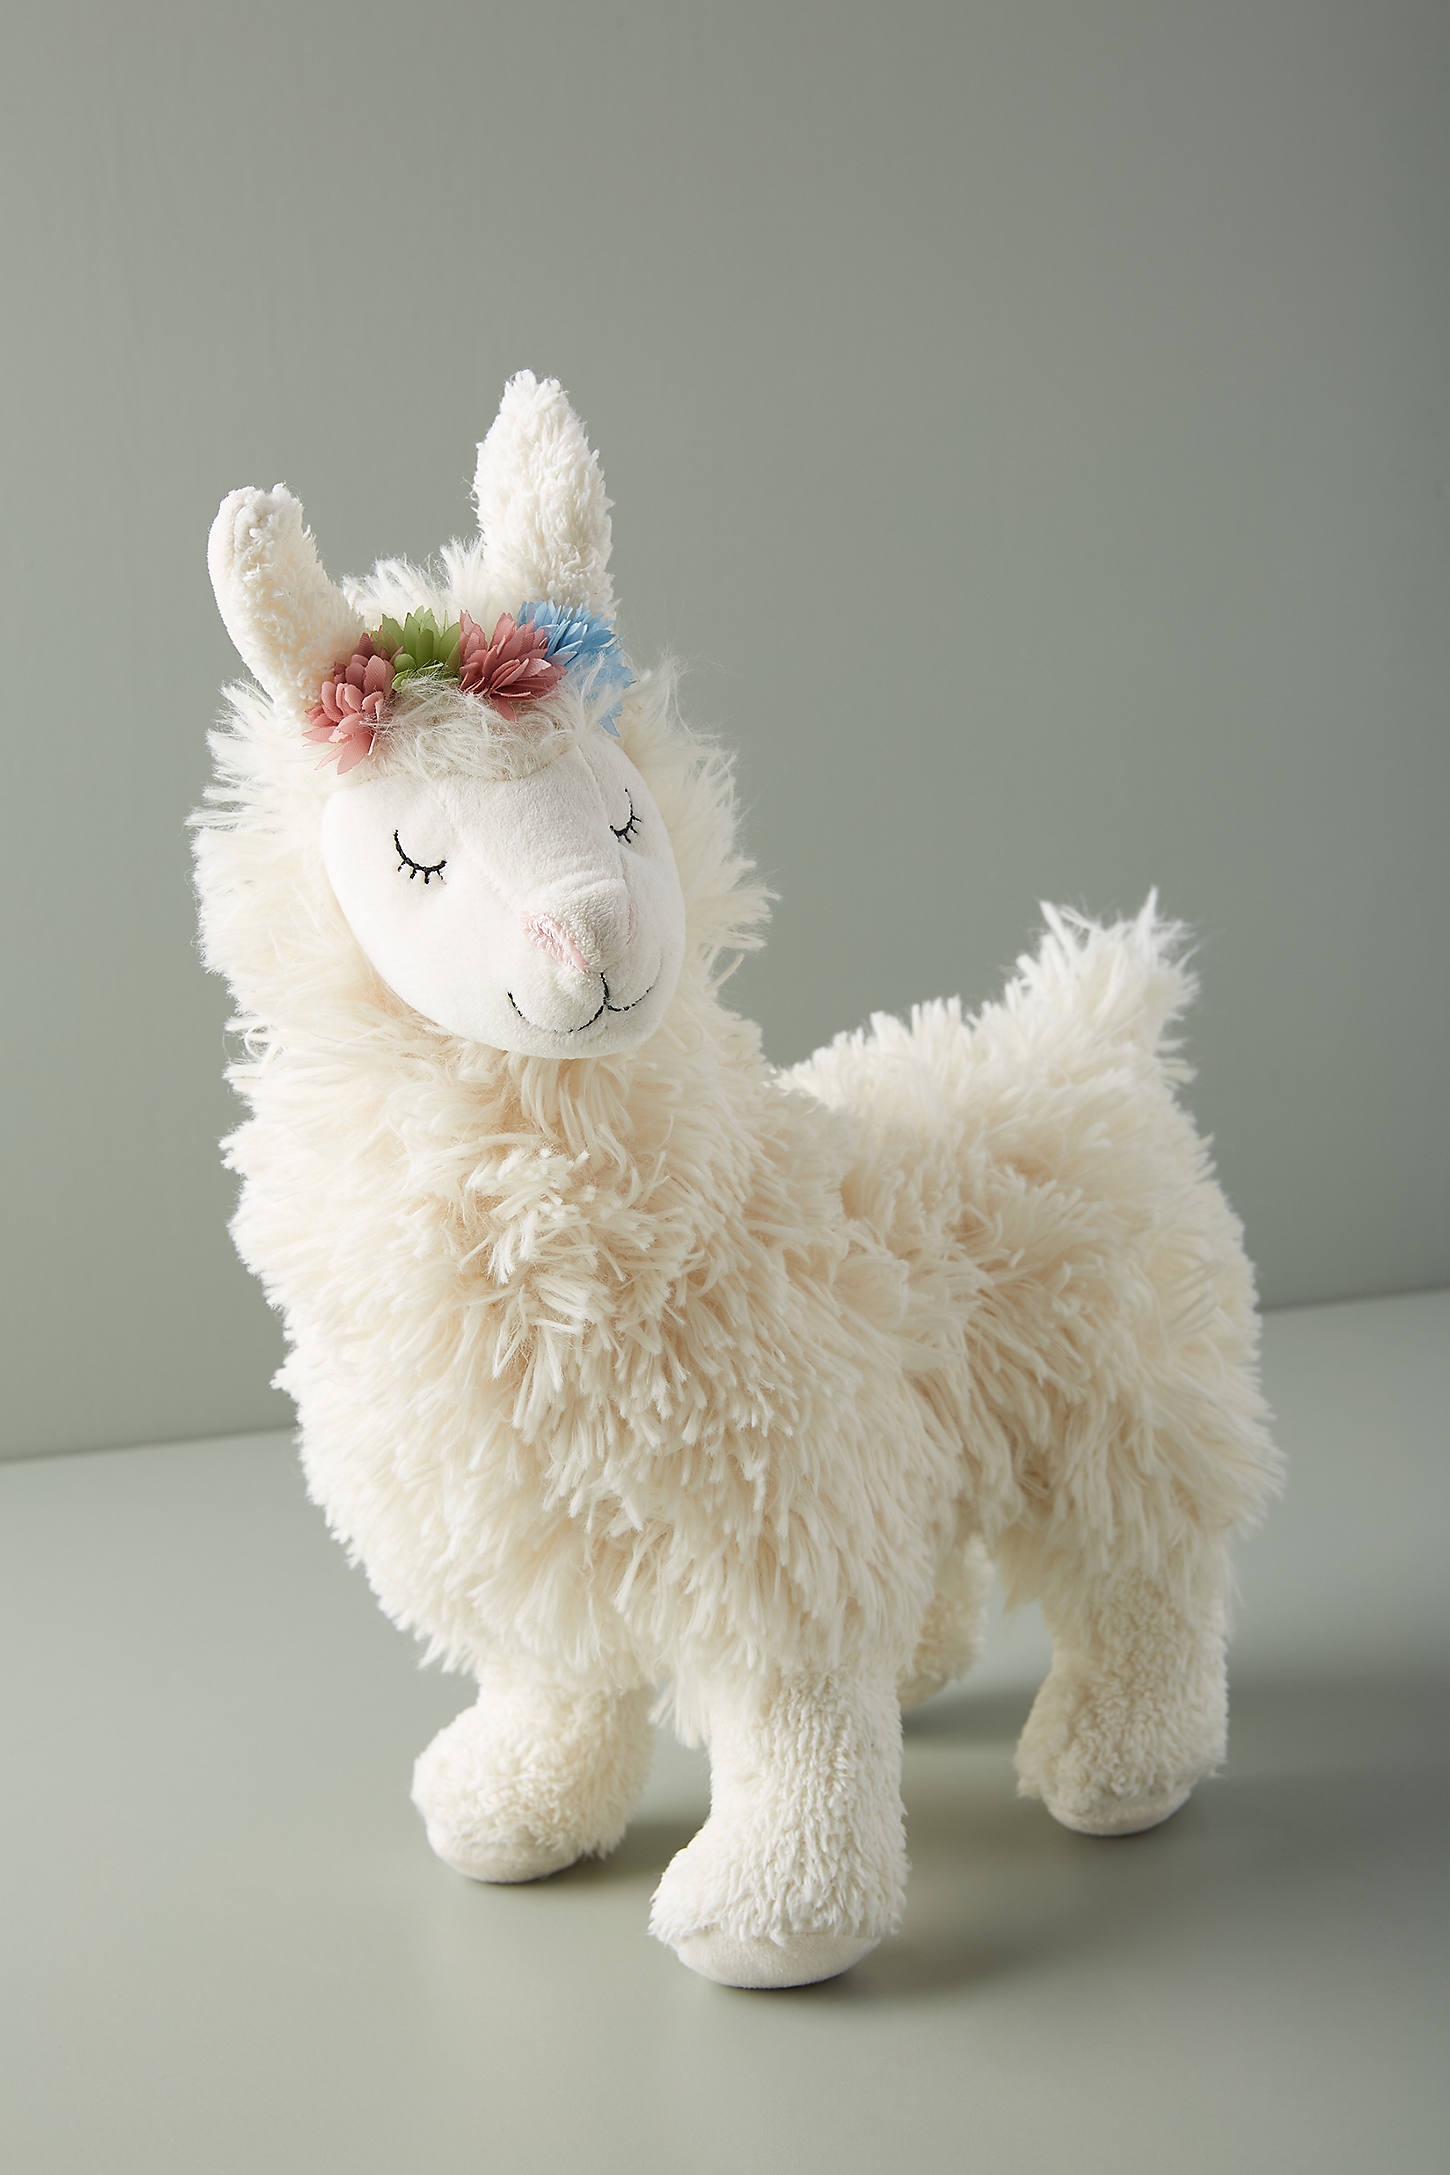 Llama Plush Toy - Image 0